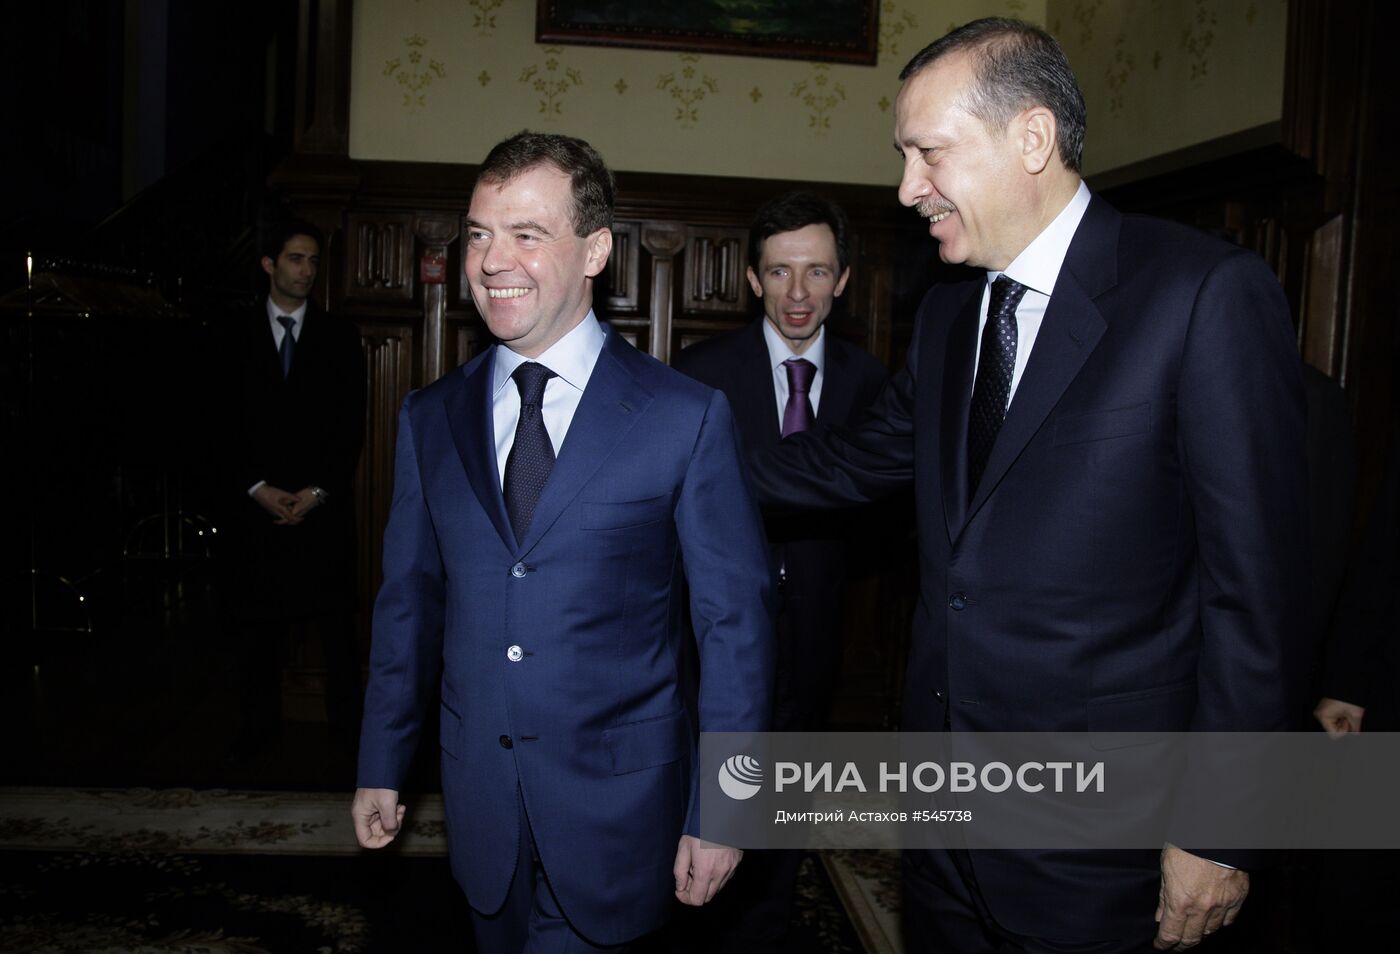 Д.Медведев и Р.Т.Эрдоган